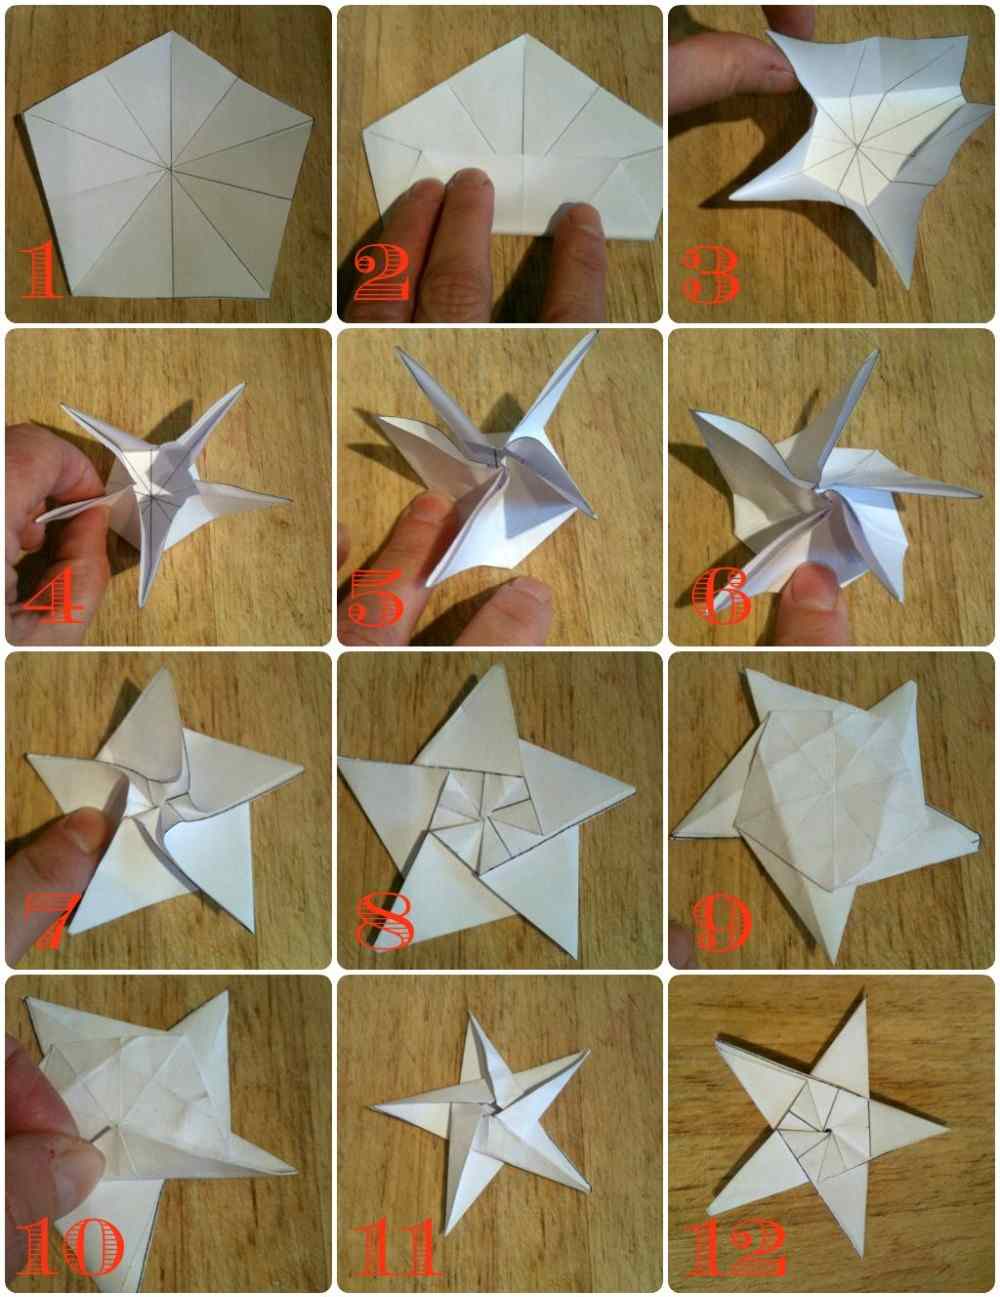 passos simples de 1 a 9 para fazer estrelas de origami sem colar